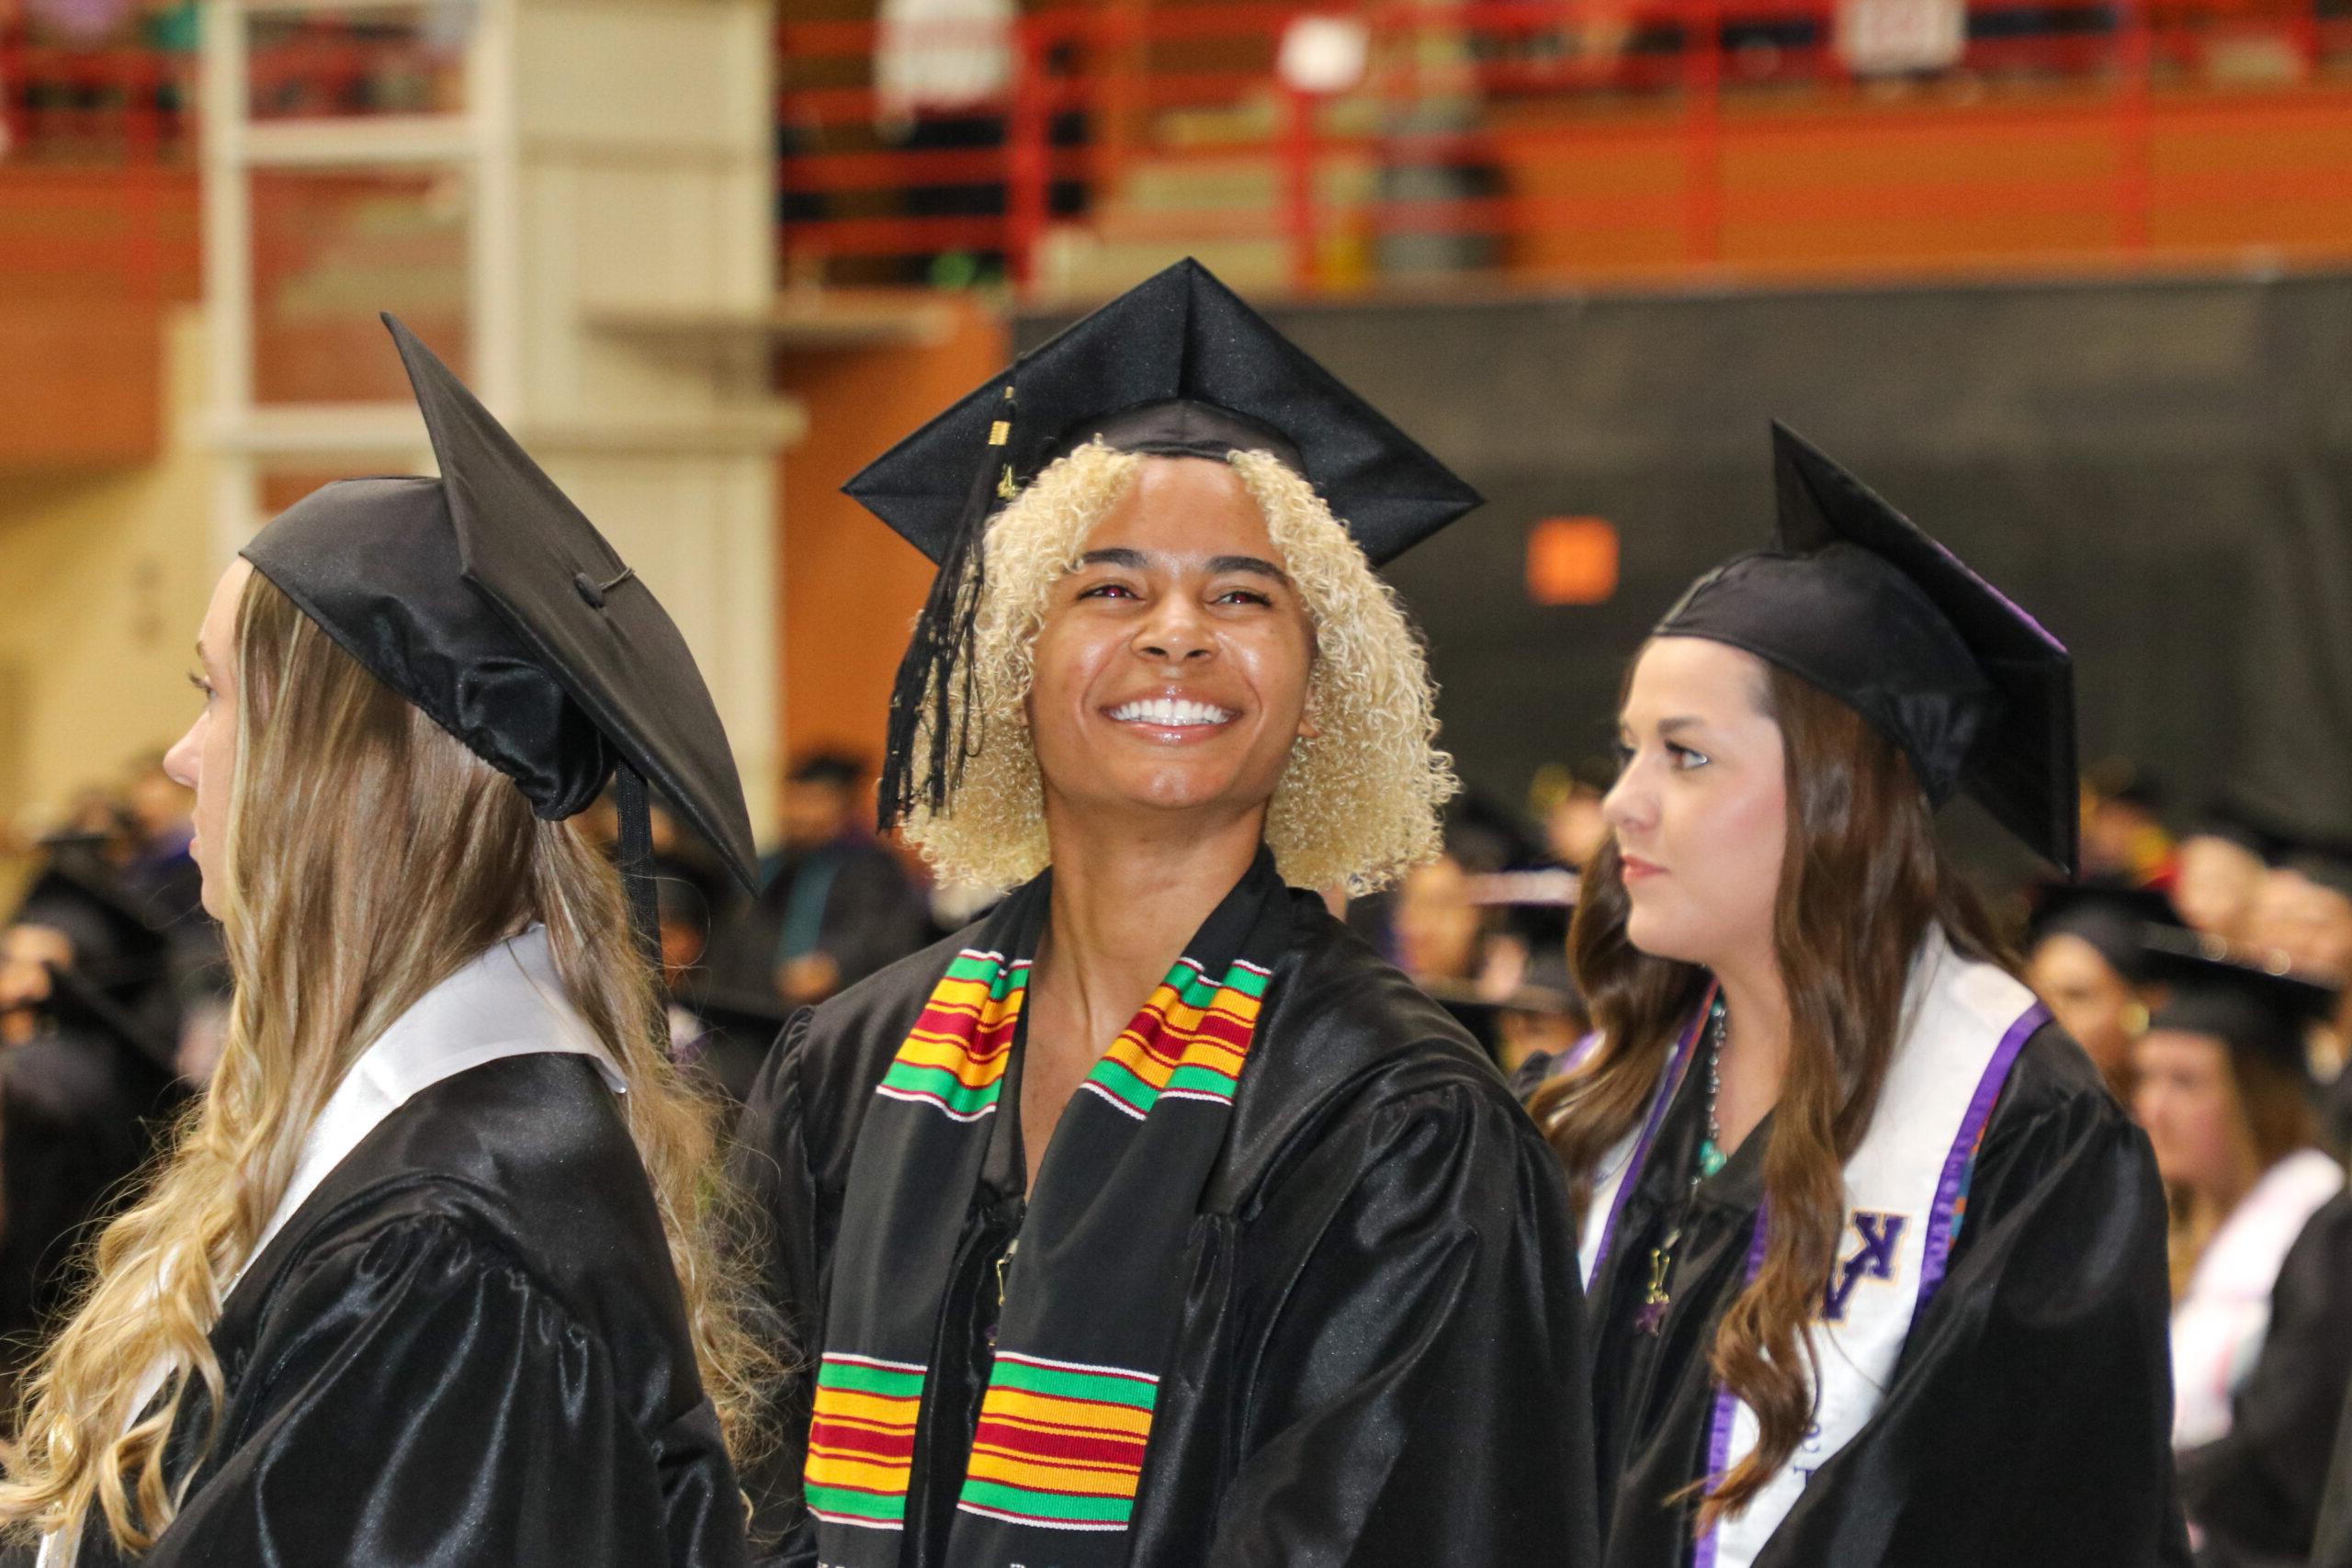 Woman in graduation attire smiling